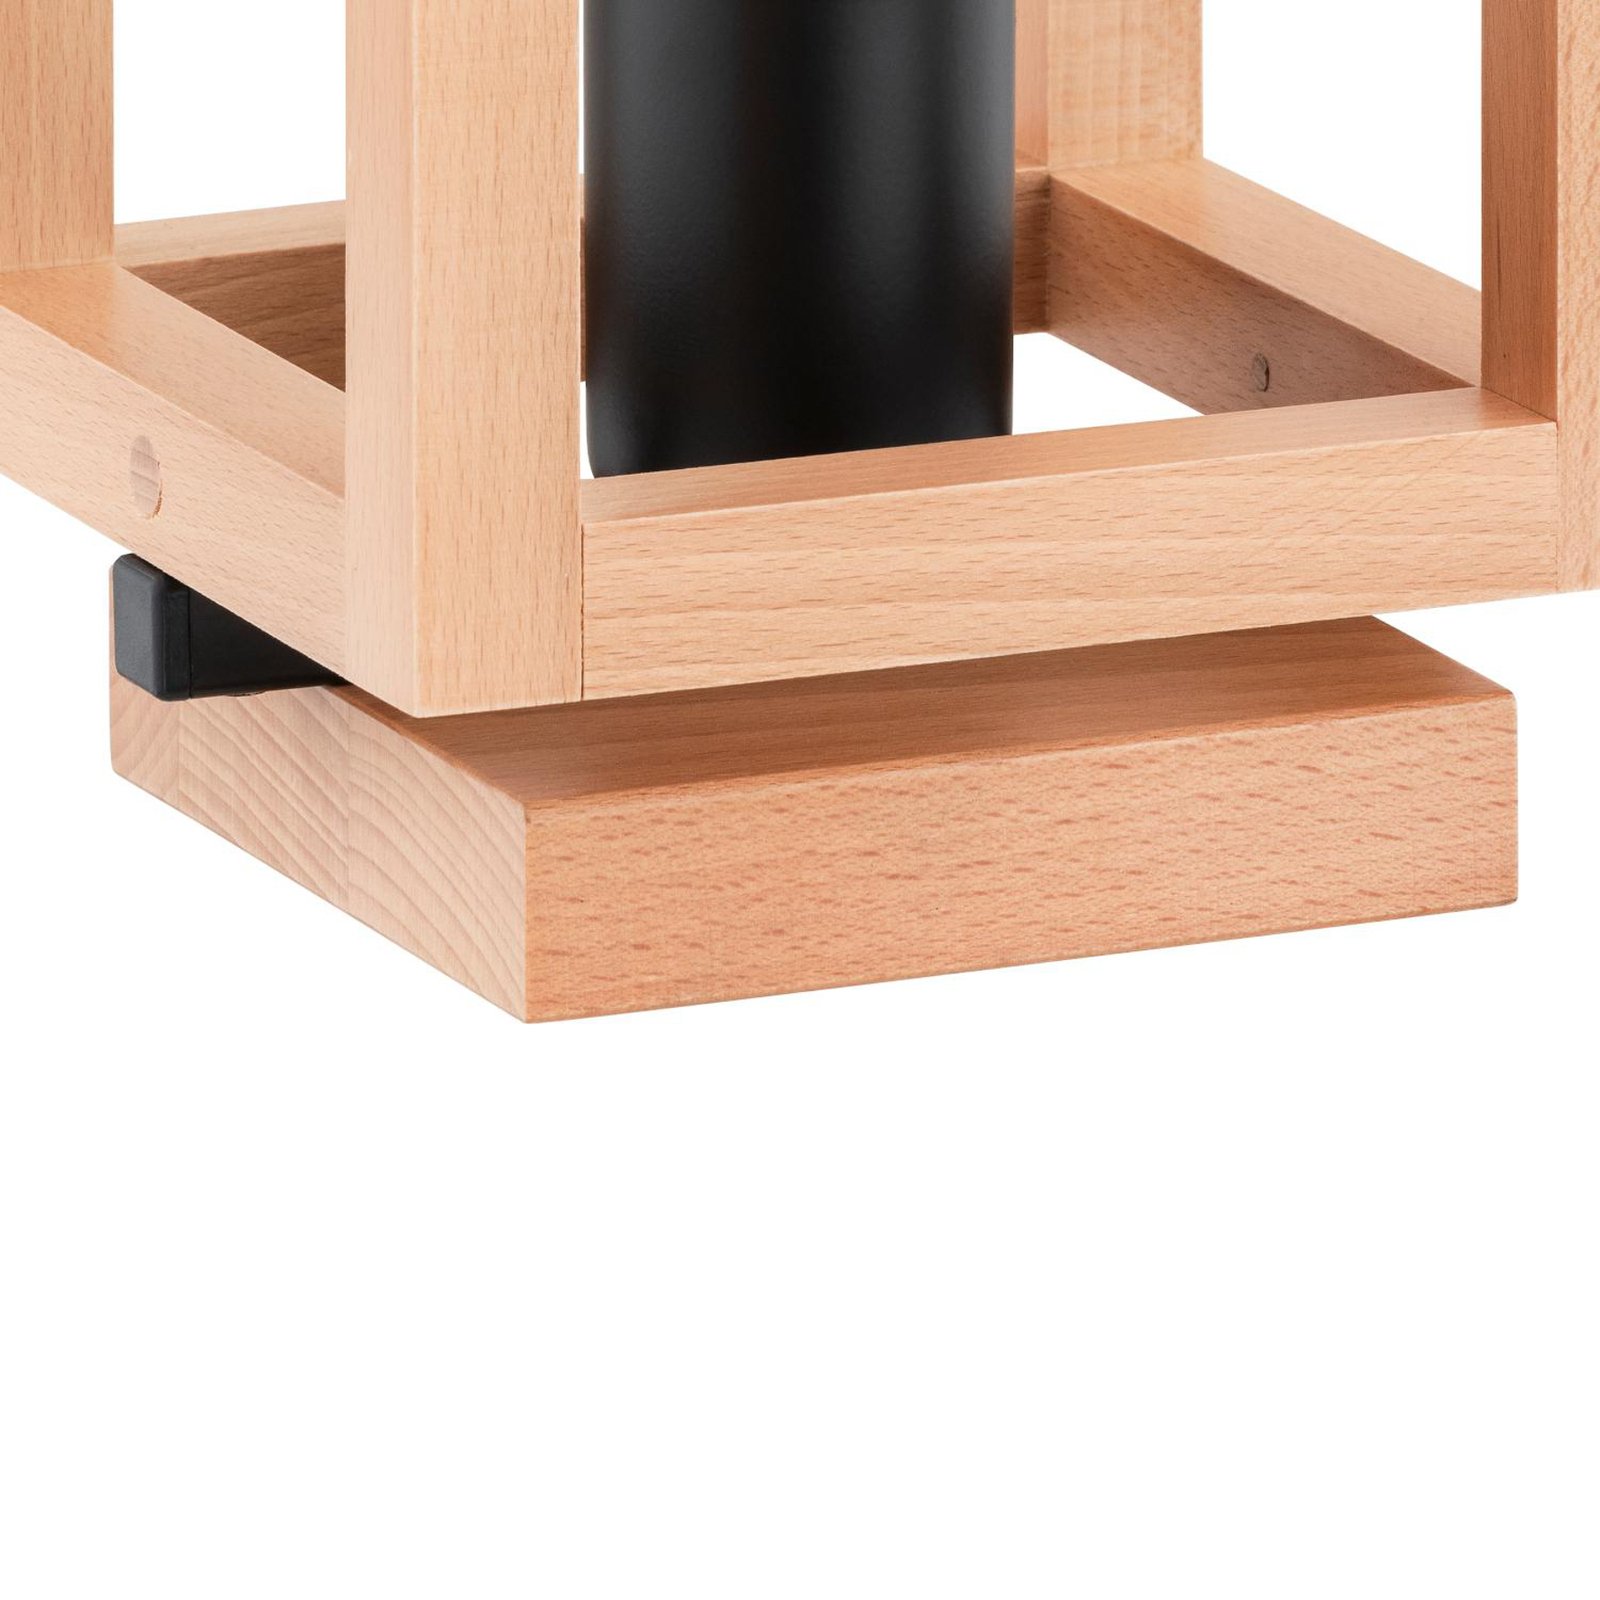 Επιτραπέζιο φωτιστικό Pako, σχήμα κλουβιού, κύβος, ξύλο, 16 x 16 x 25 cm